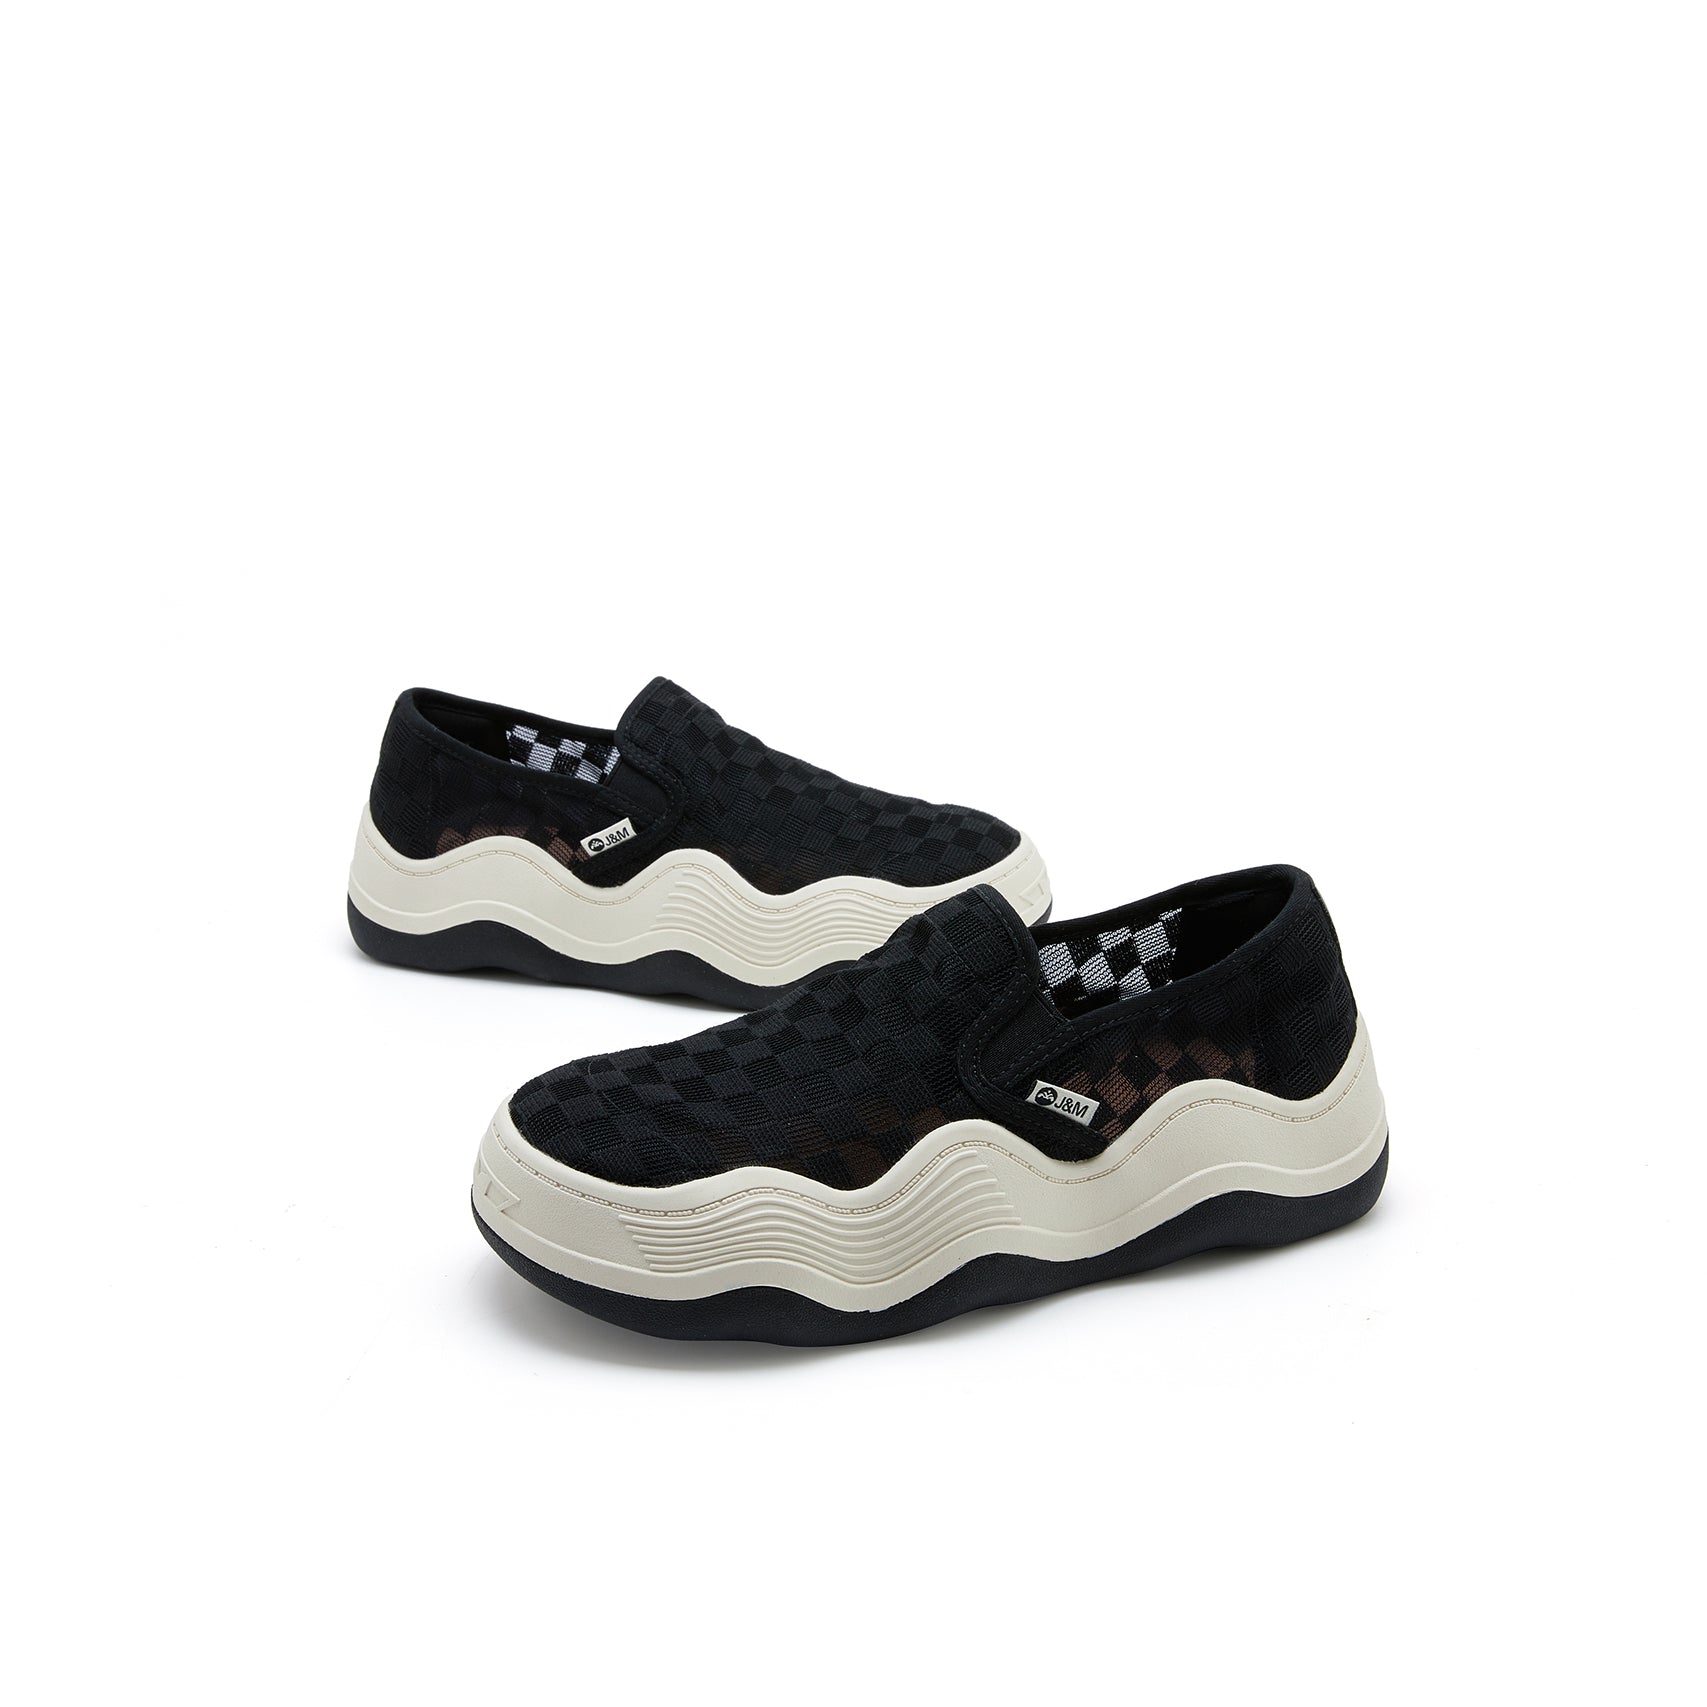 JOY&MARIO Women’s Slip-On Mesh Loafers in Black-87312W